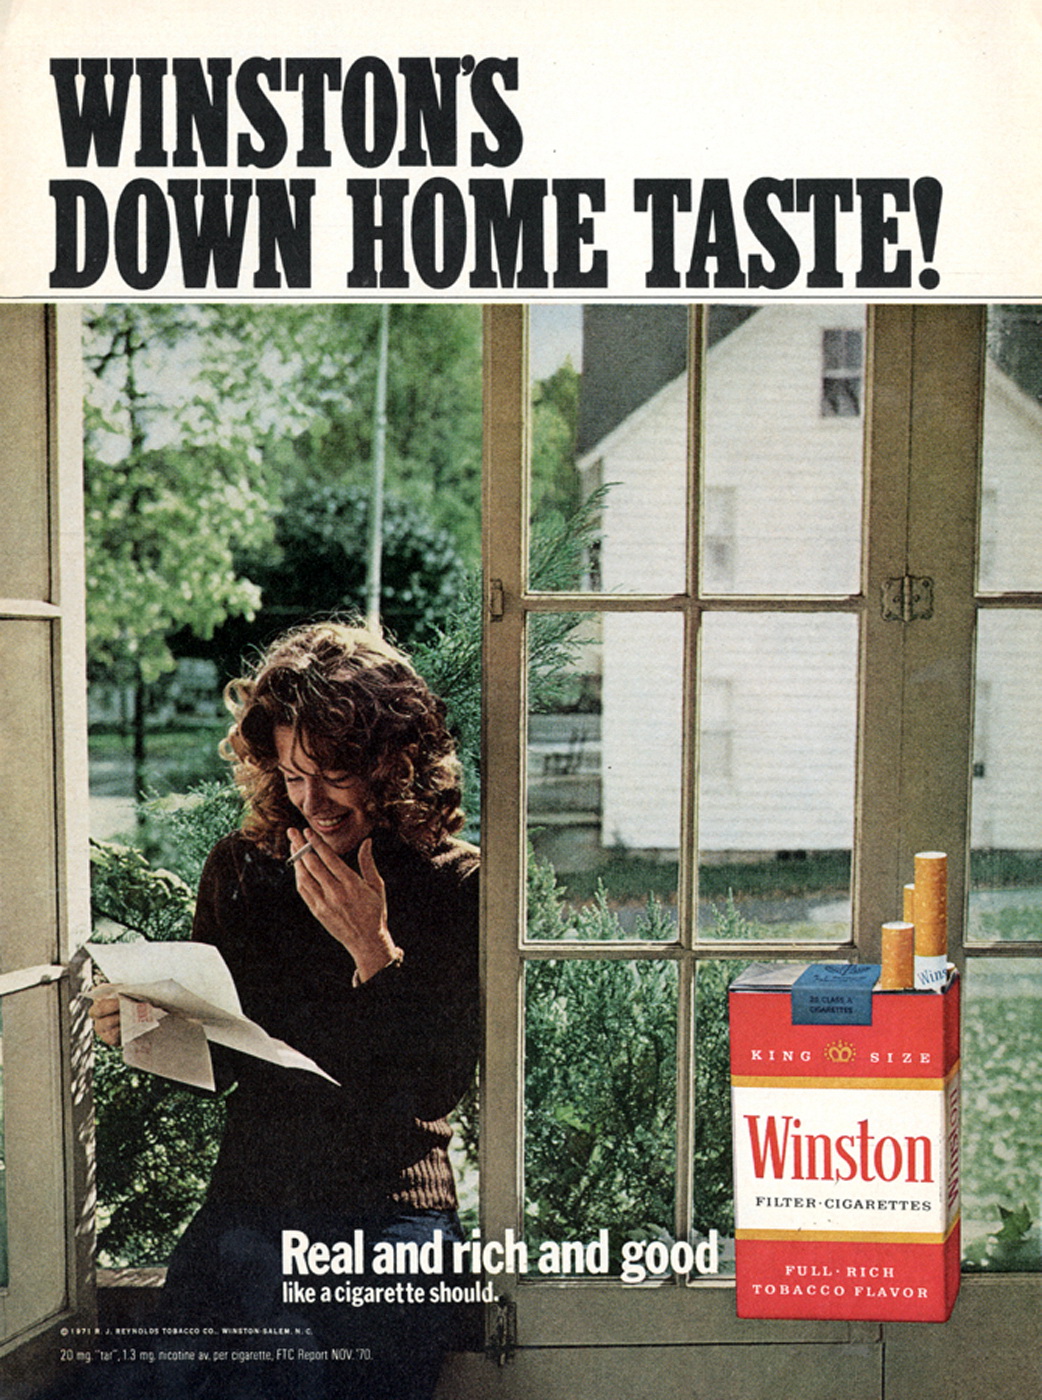 Текст песни курит не меньше чем винстон. Winston реклама. Реклама сигарет Винстон. Реклама Winston 1950. Реклама сигар Winston.